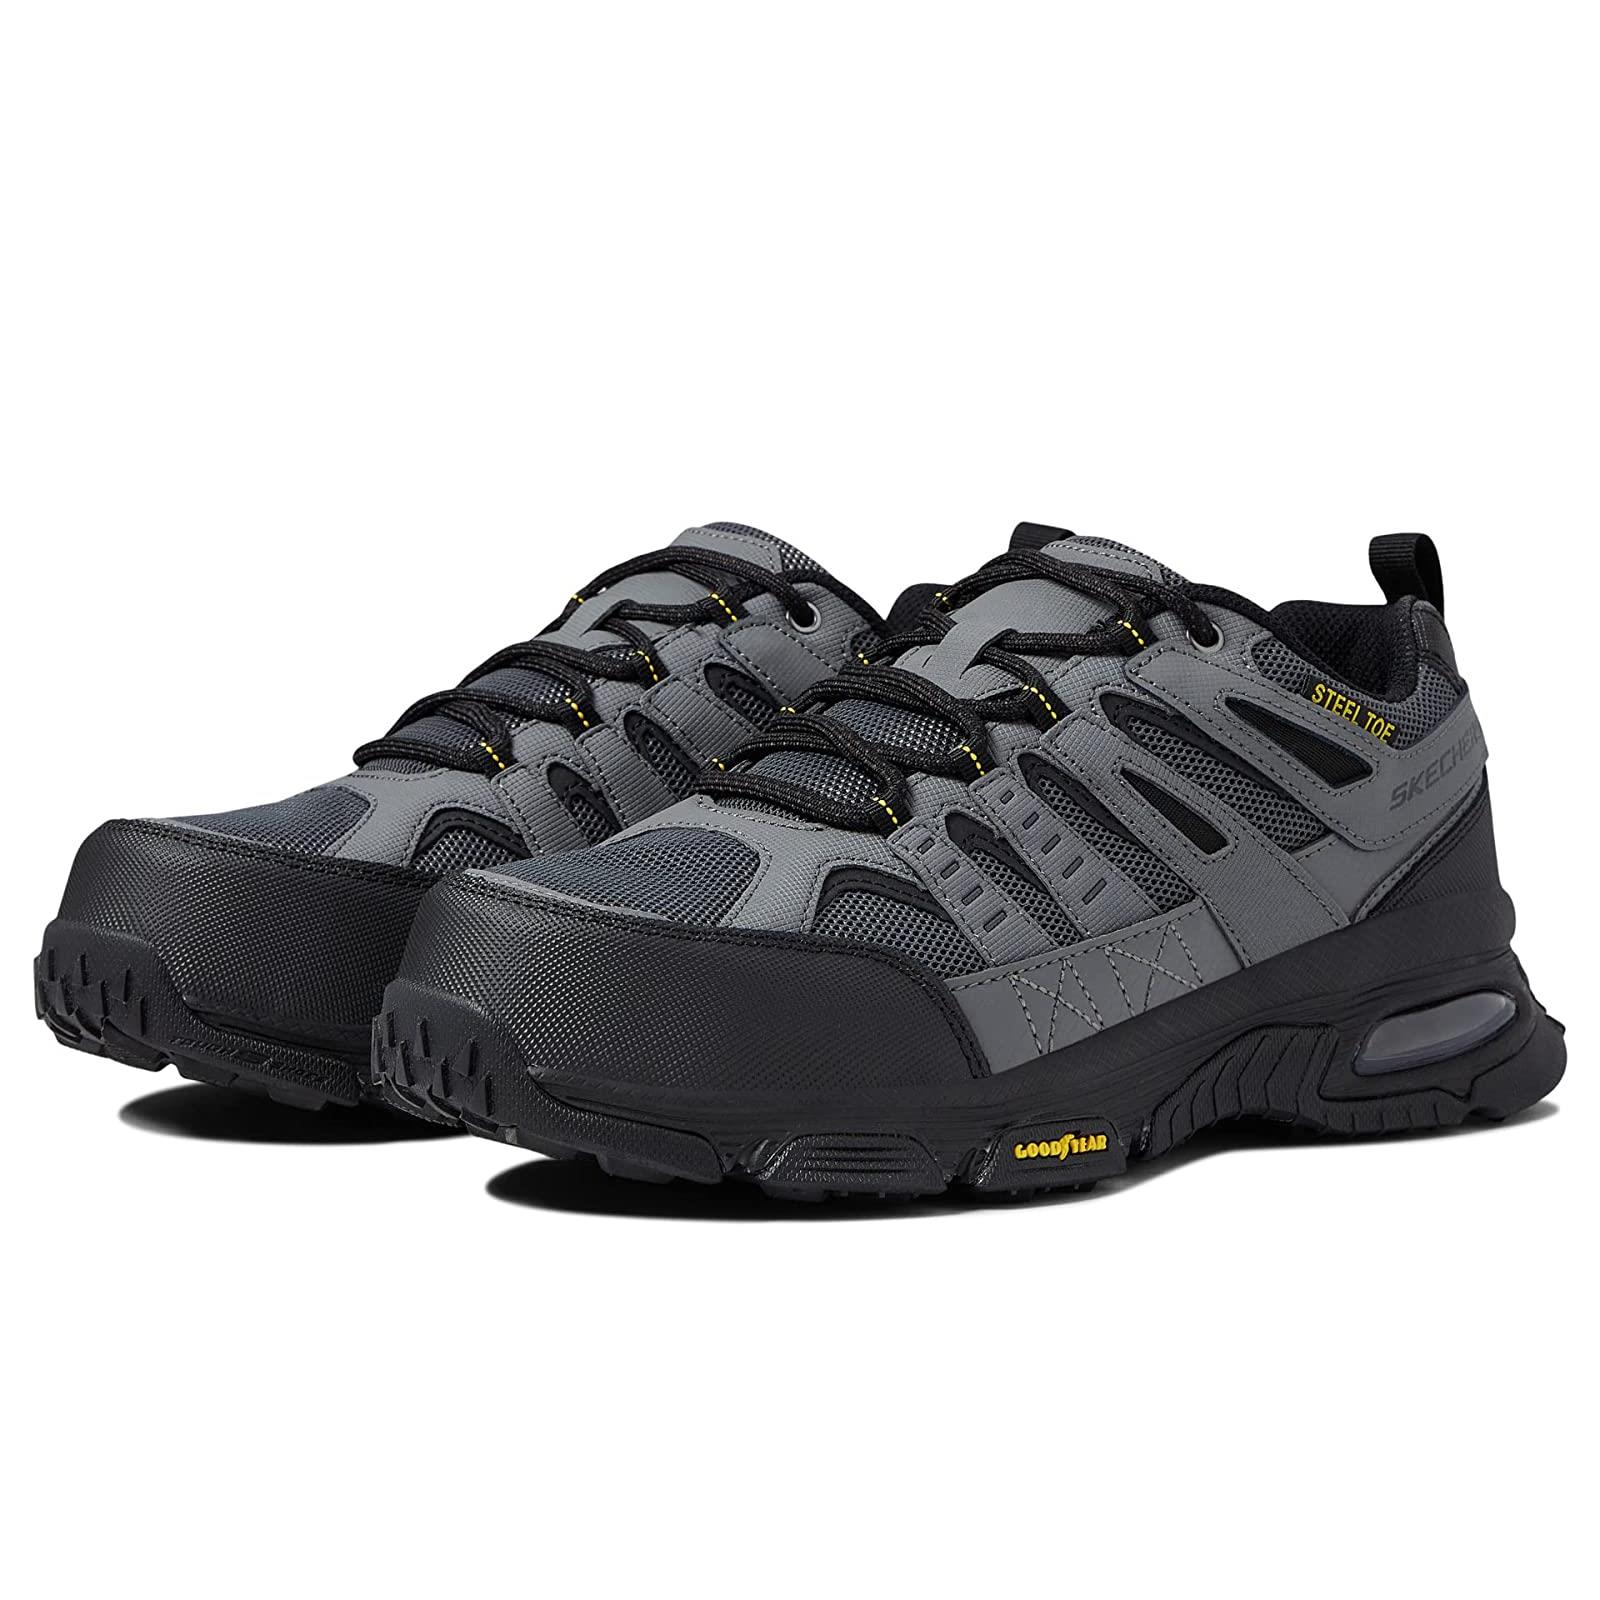 Man`s Sneakers Athletic Shoes Skechers Work Skech-air Envoy ST - Arcket Gray/Black